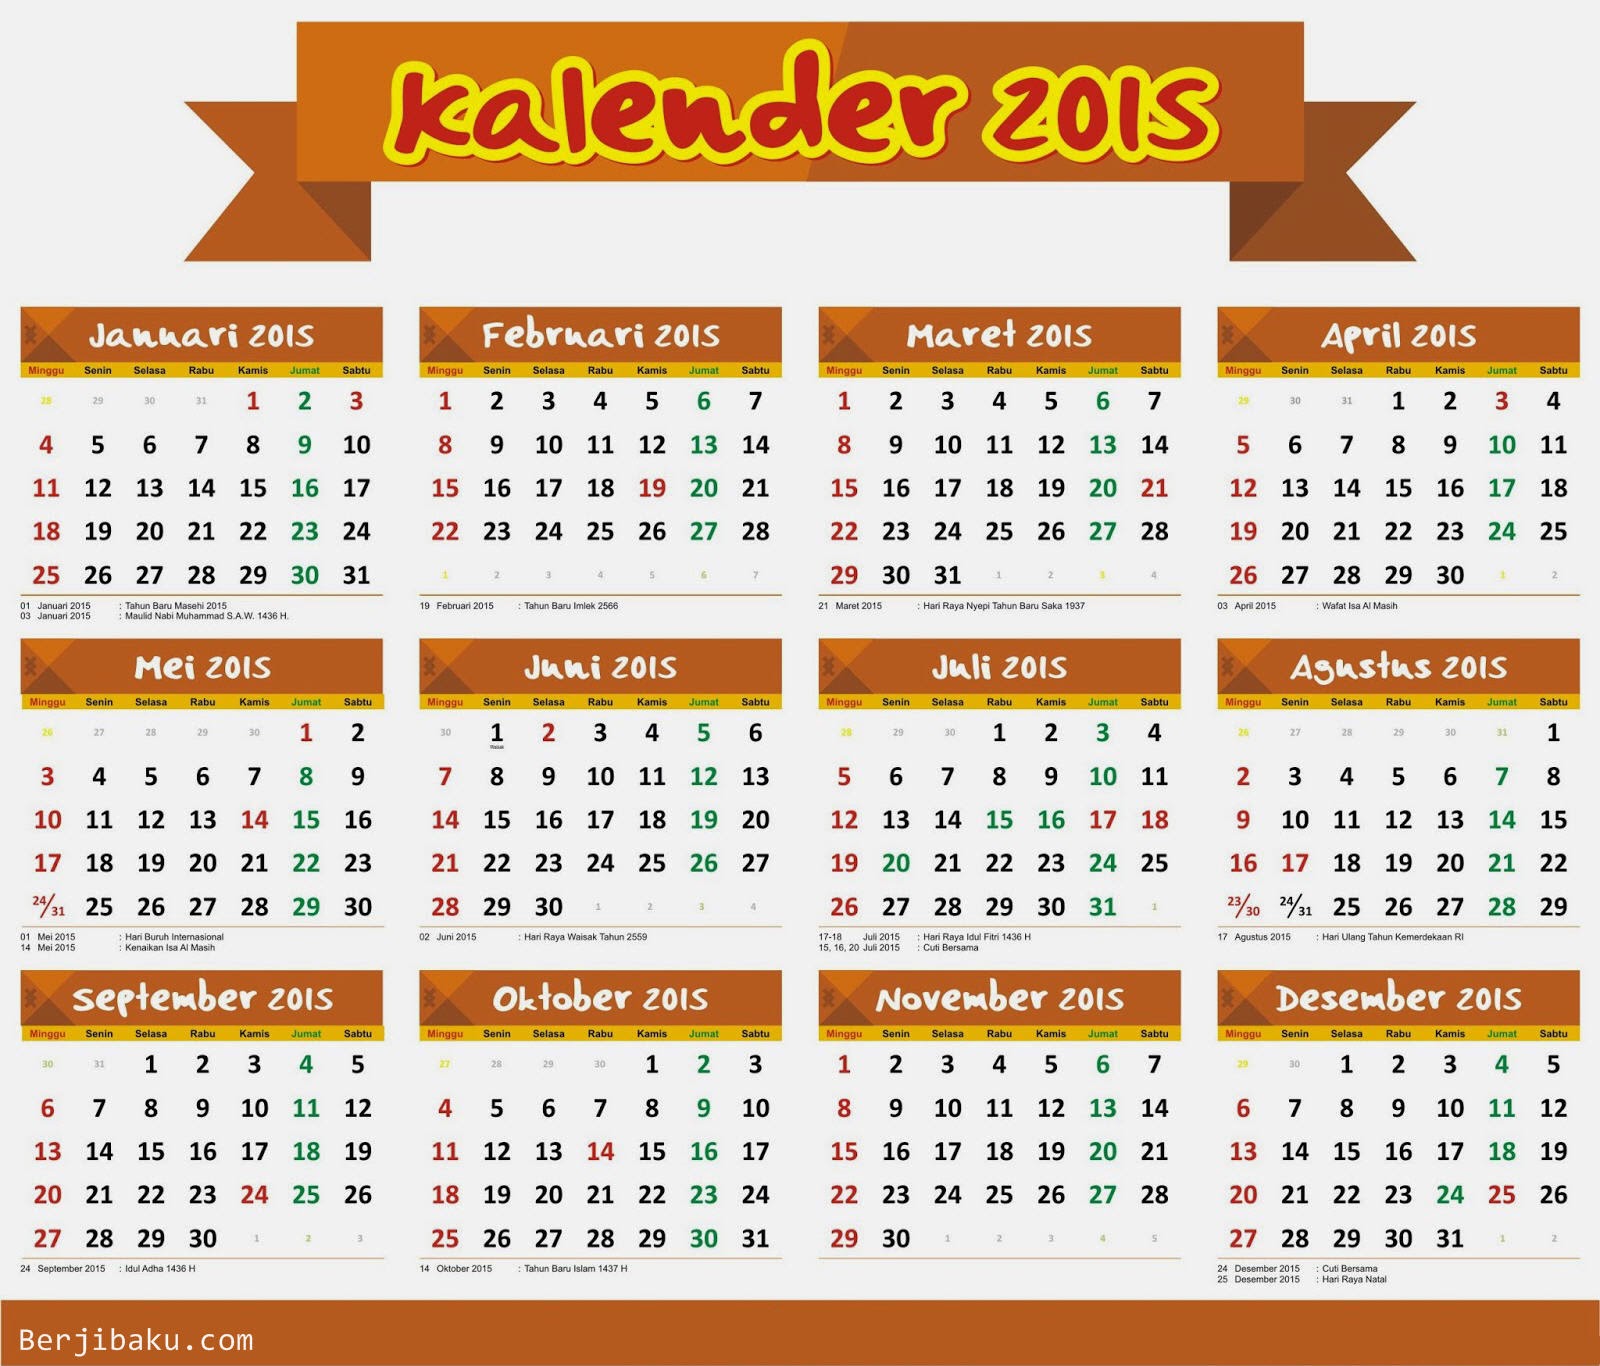 Kalender 2015, cuti bersama dan hari libur nasional 